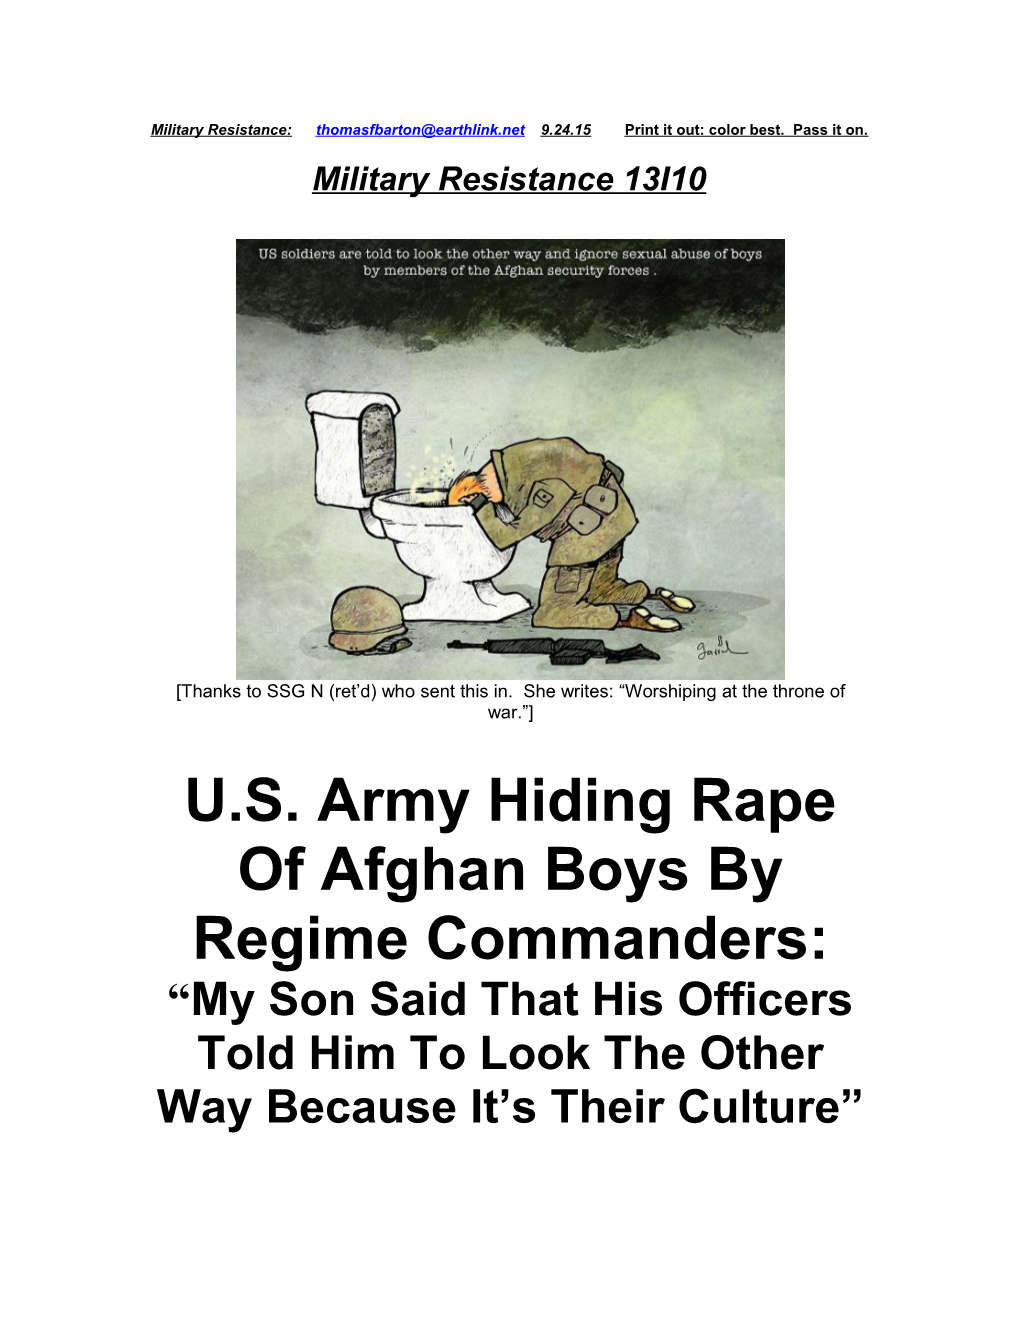 U.S. Army Hiding Rape of Afghan Boys by Regime Commanders